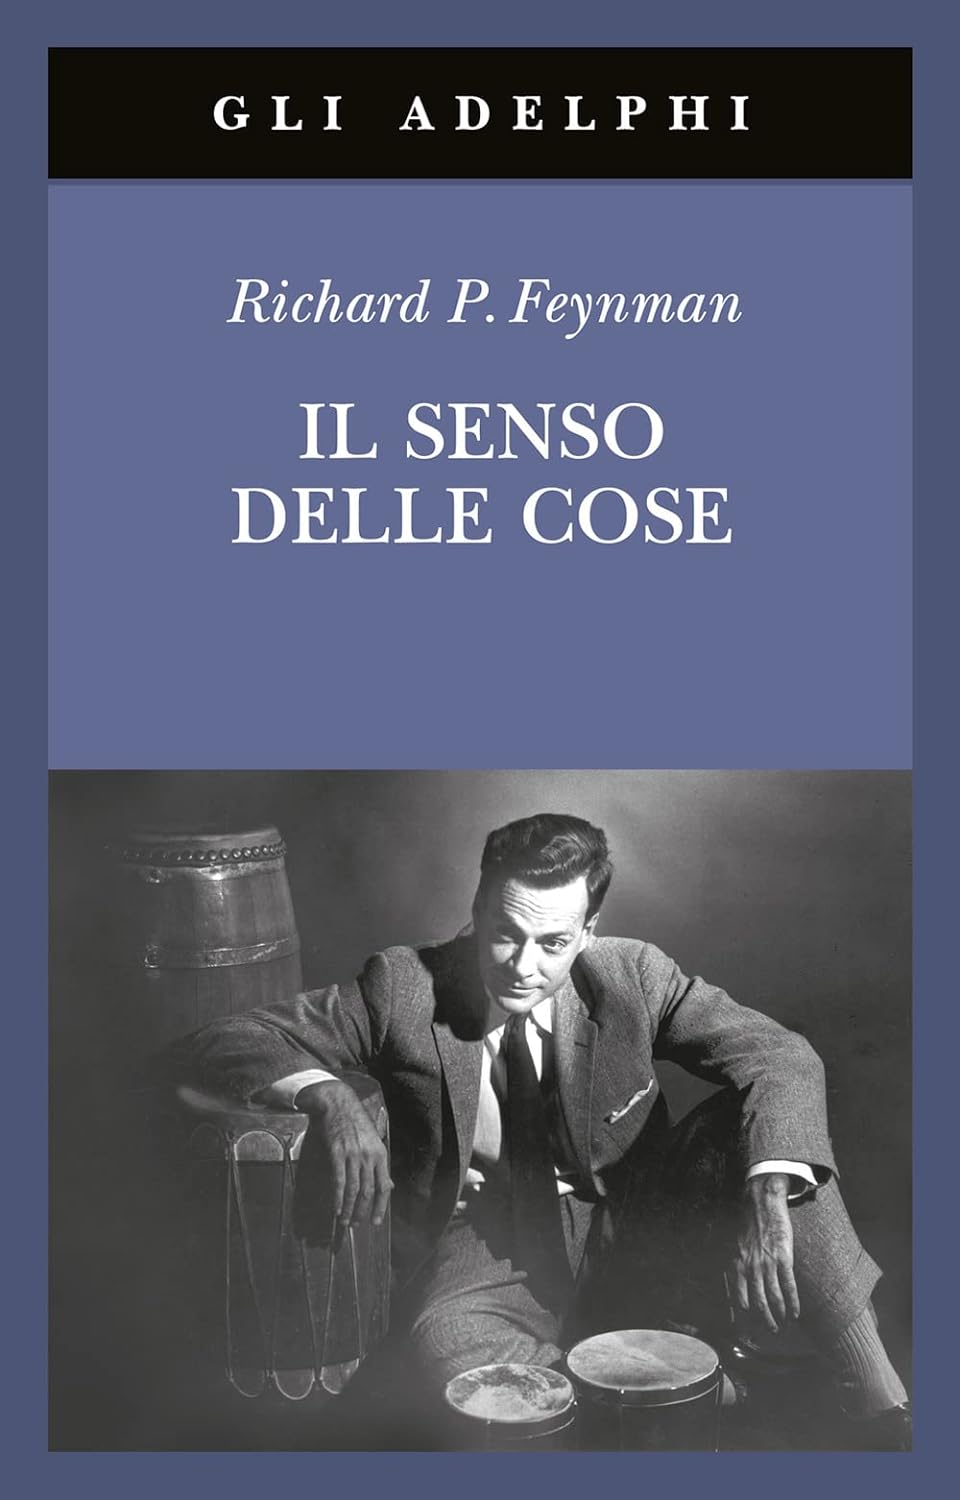 Richard P. Feynman: Il senso delle cose (Adelphi)